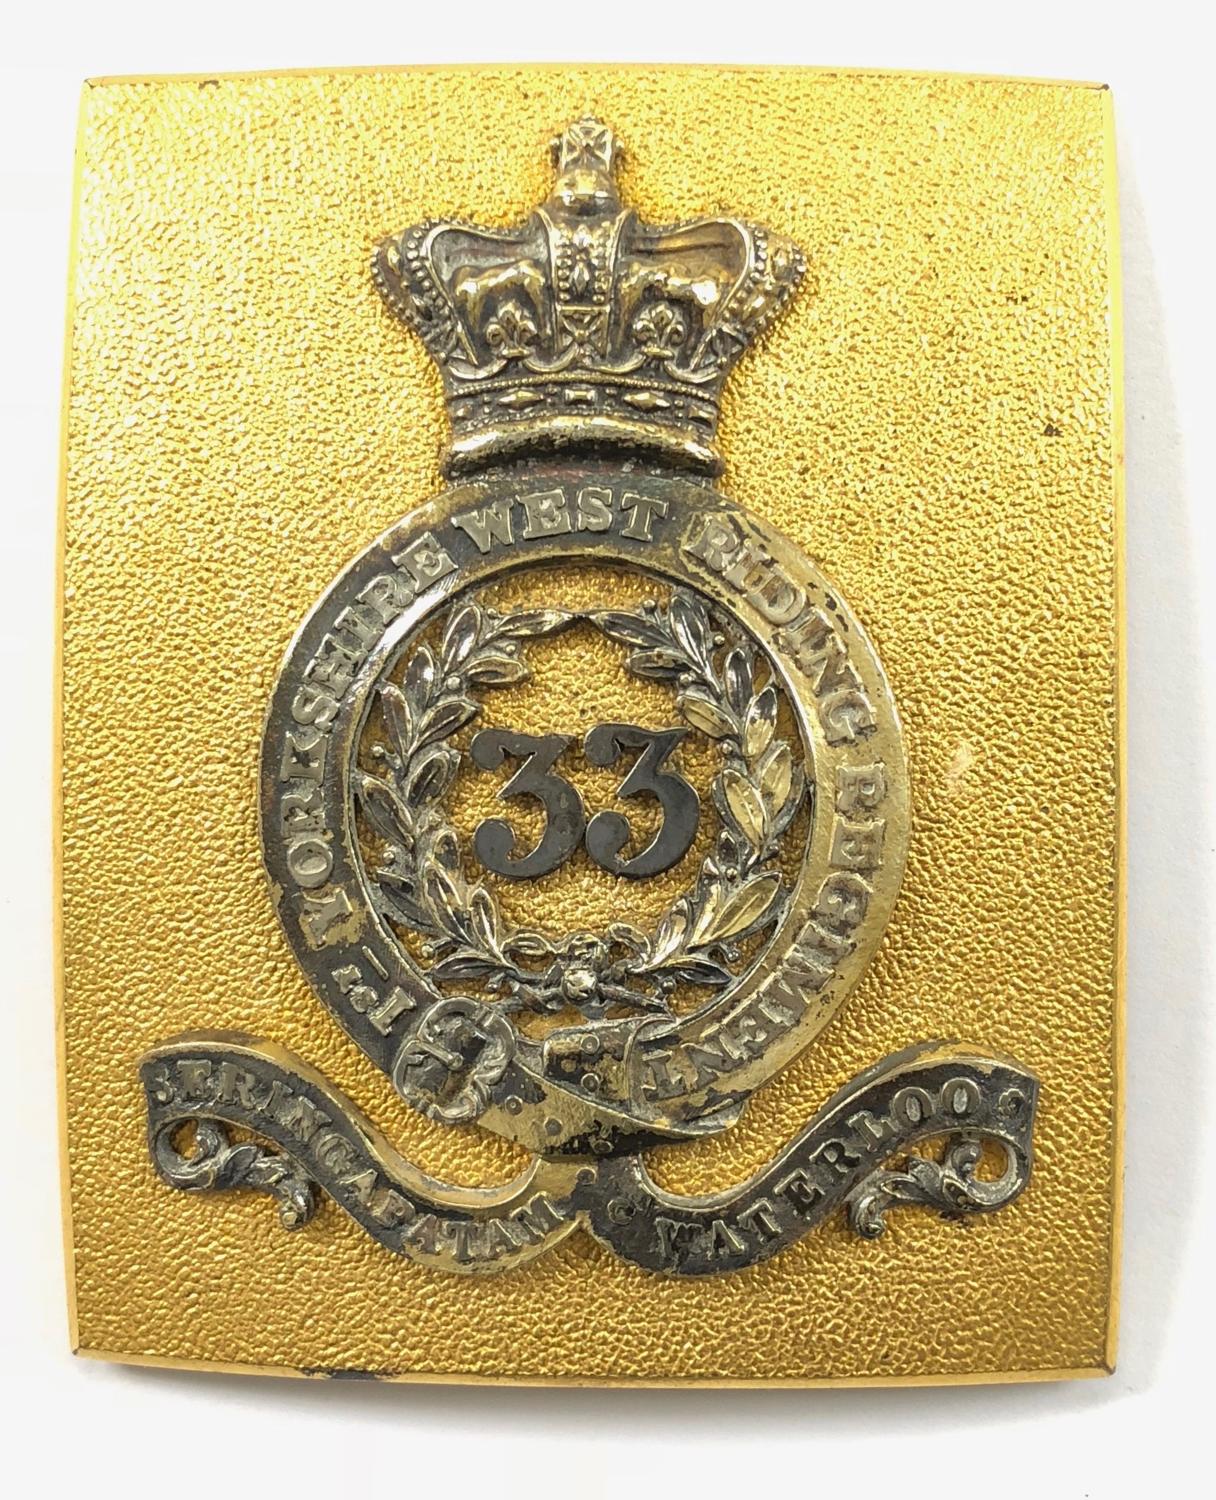 33rd Foot (1st Yorkshire, West Riding) Officer’s shoulder belt plate